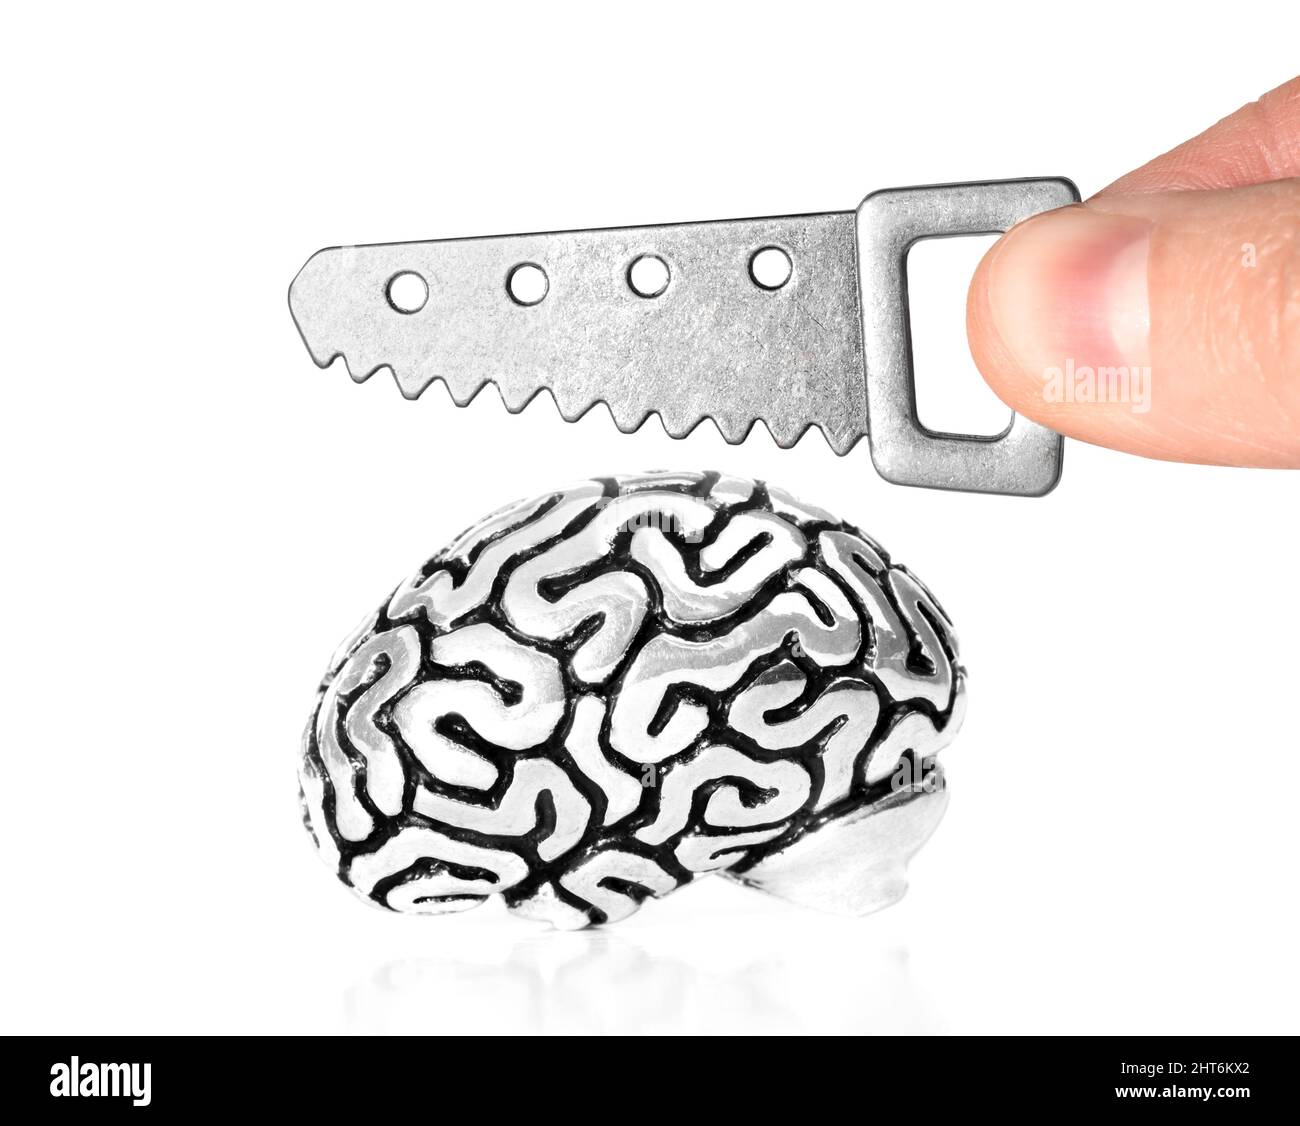 Sägen einer anatomischen Miniatur-Kopie eines menschlichen Gehirns mit einer kleinen Säge auf weißem Hintergrund. Beziehungsschwierigkeiten Konzept. Stockfoto